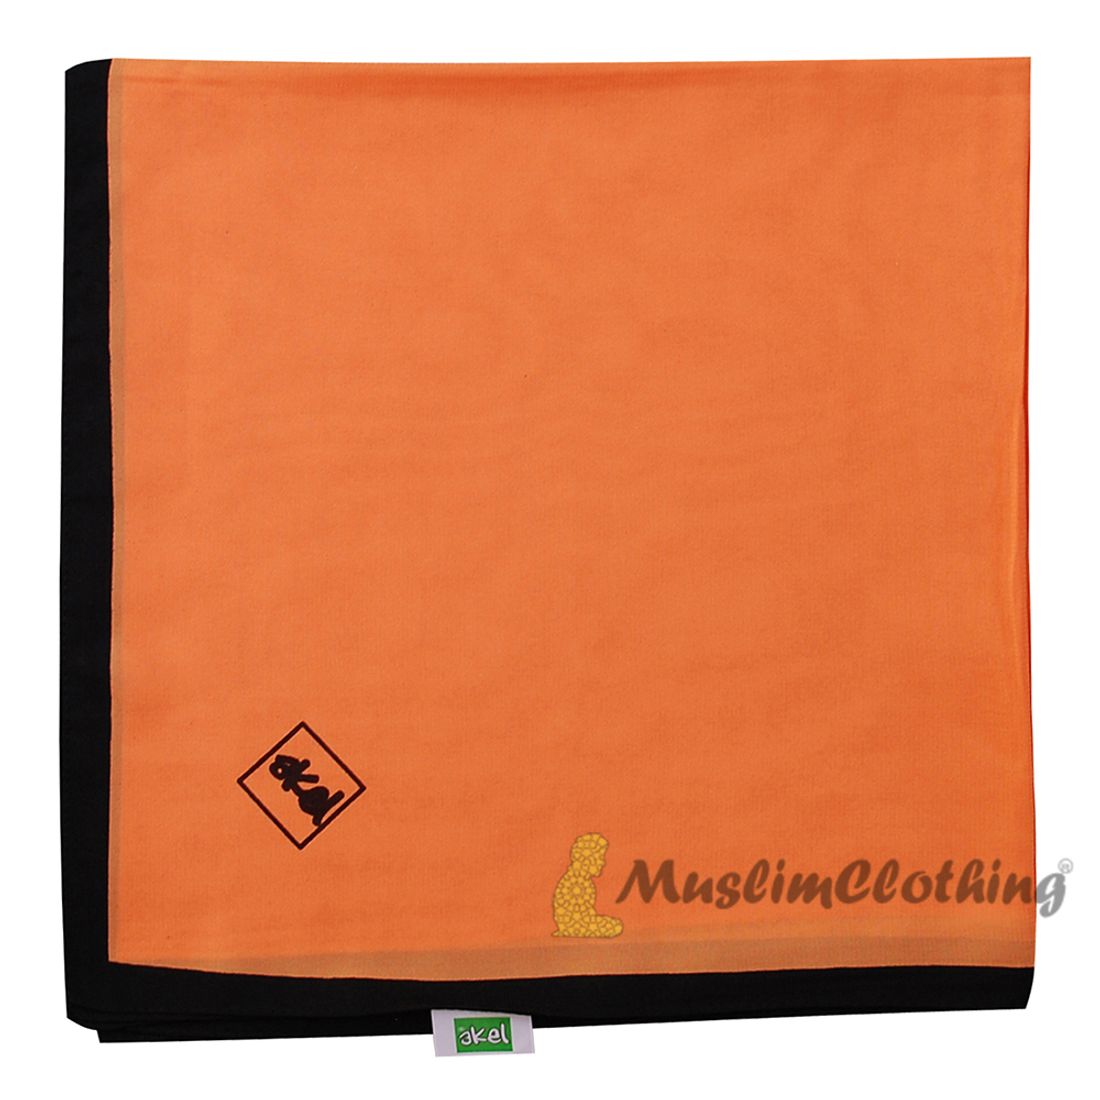 Orange with Black Border Chiffon Scarf Hijab Shawl Islamic Headwear